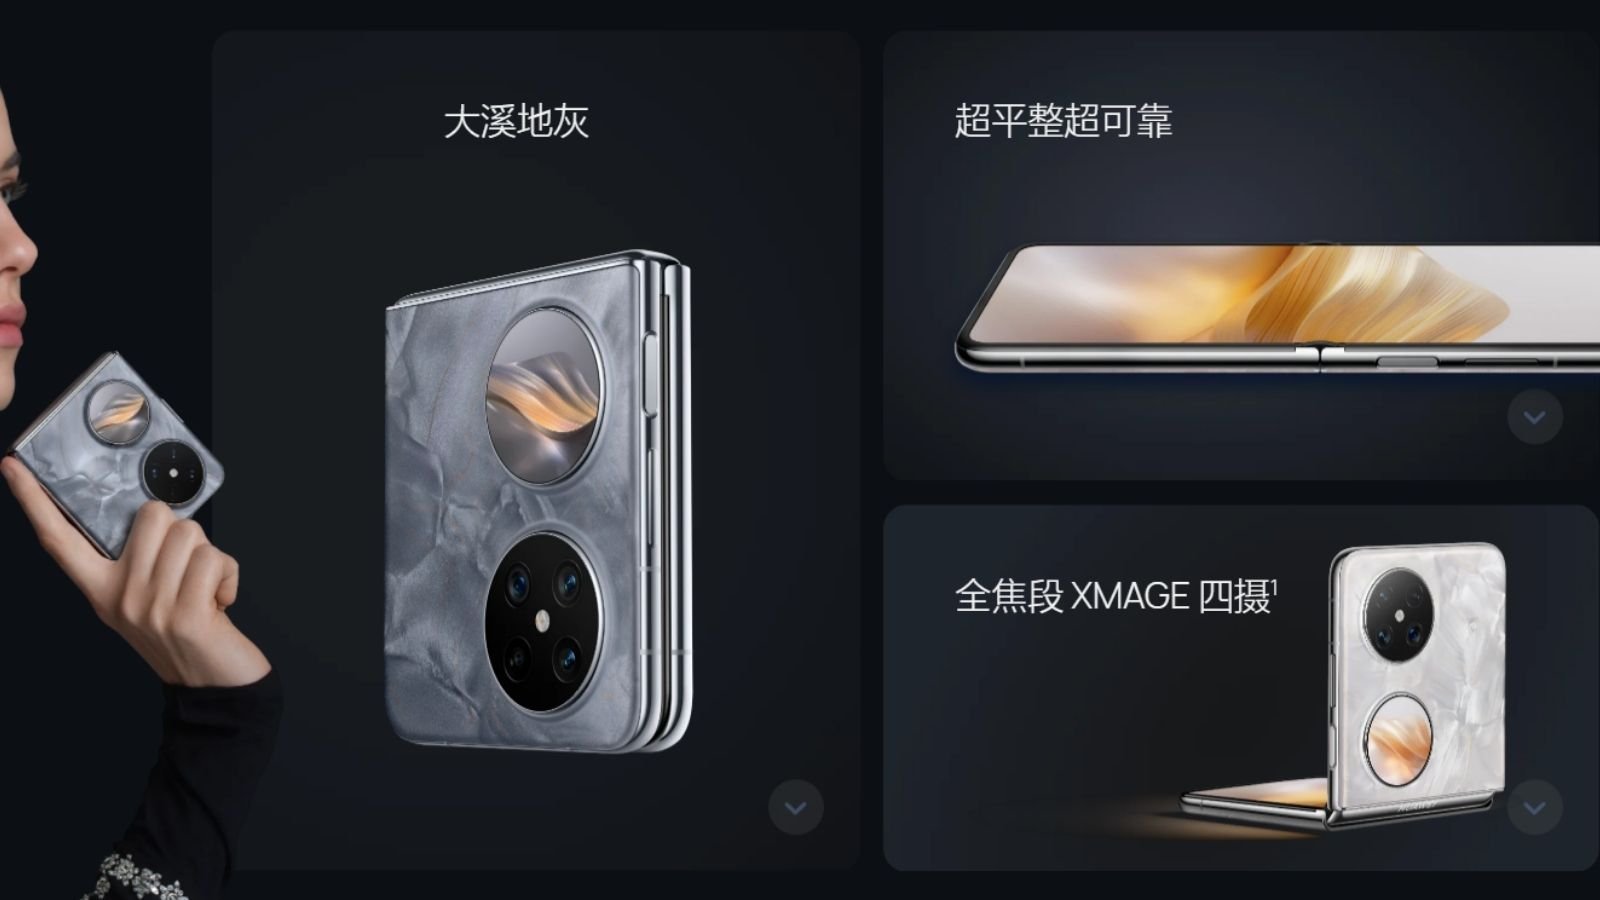 Yeni Katlanabilir Model Huawei Pocket 2 Resmen Tanıtıldı!